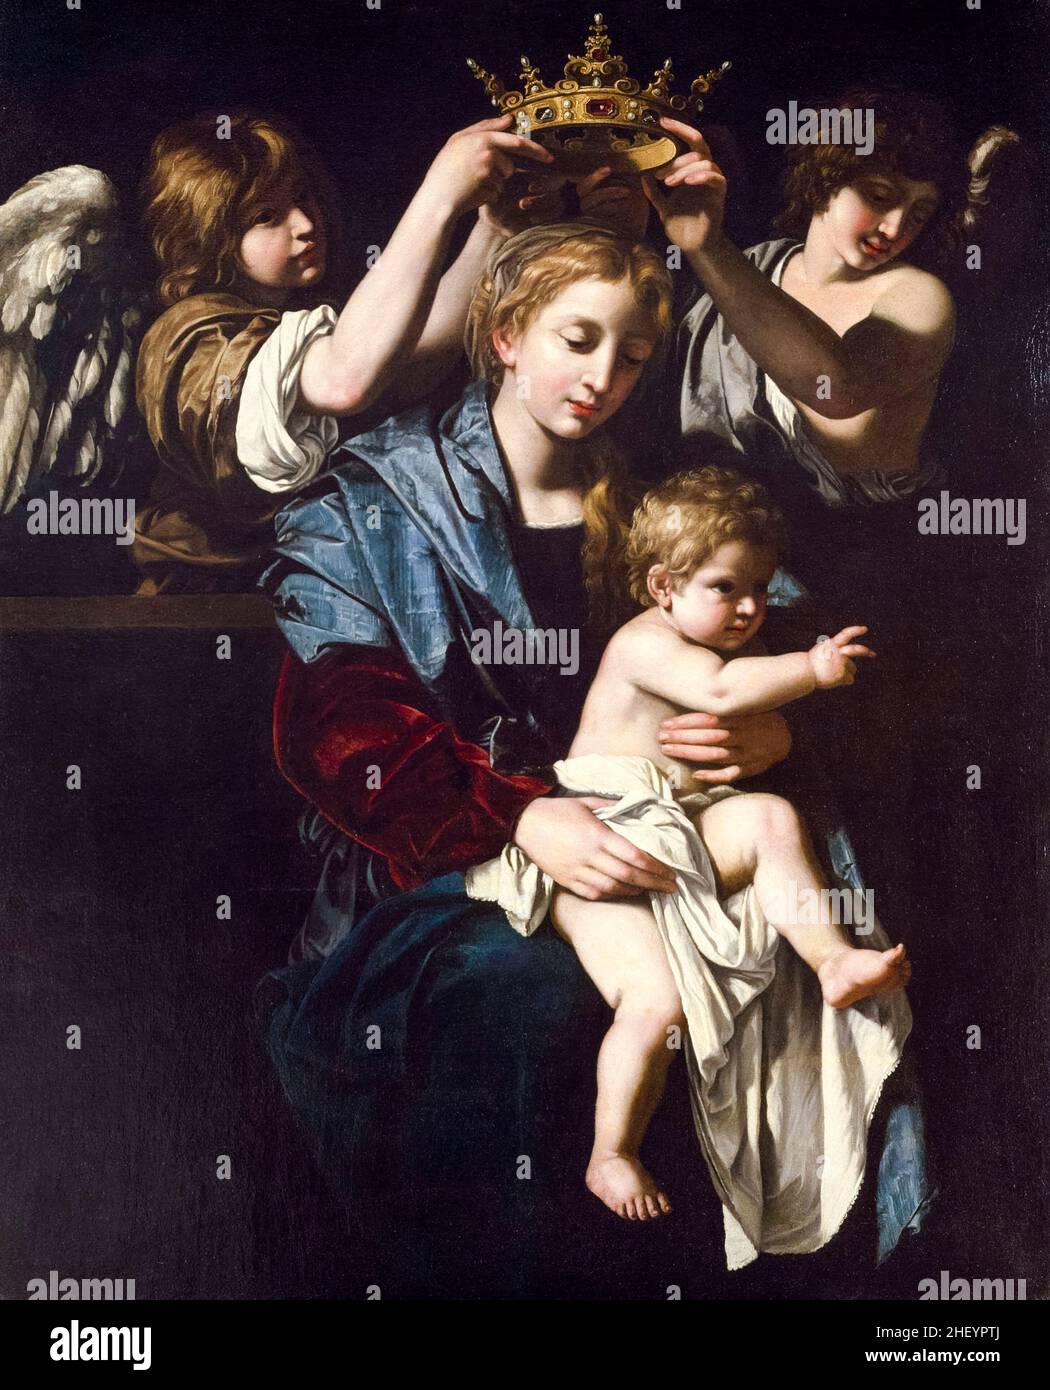 Vierge et enfant avec Anges, peinture de Bartolomeo Cavarozzi, vers 1620 Banque D'Images